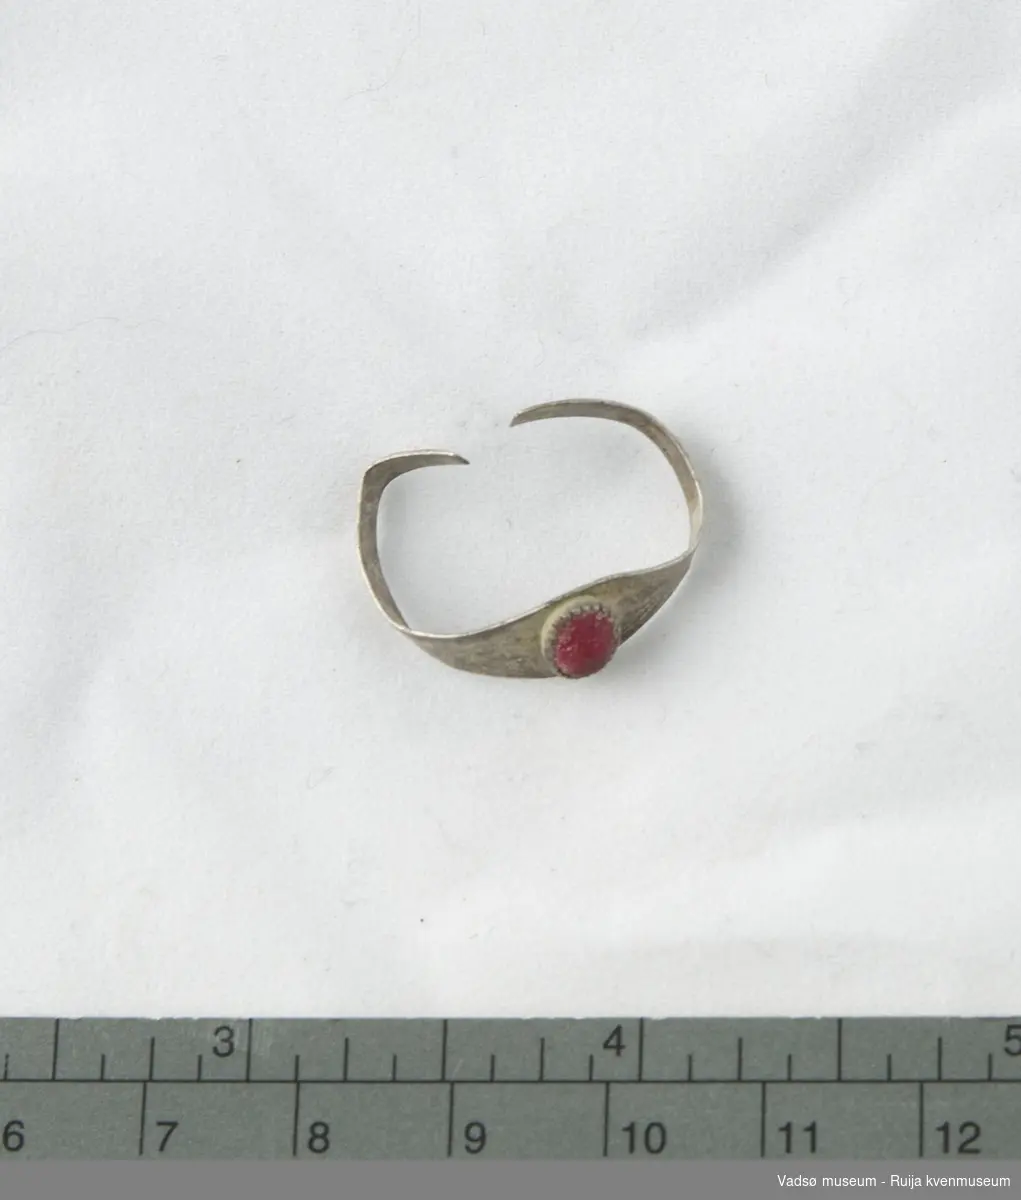 Sølvring som er dekorert med en oval, rød smykkestein av glass. Steinen har avrundete kanter, men viser tegn til opprinnelig fasettering. Sisellert prikke- og strekdekor på ringen.